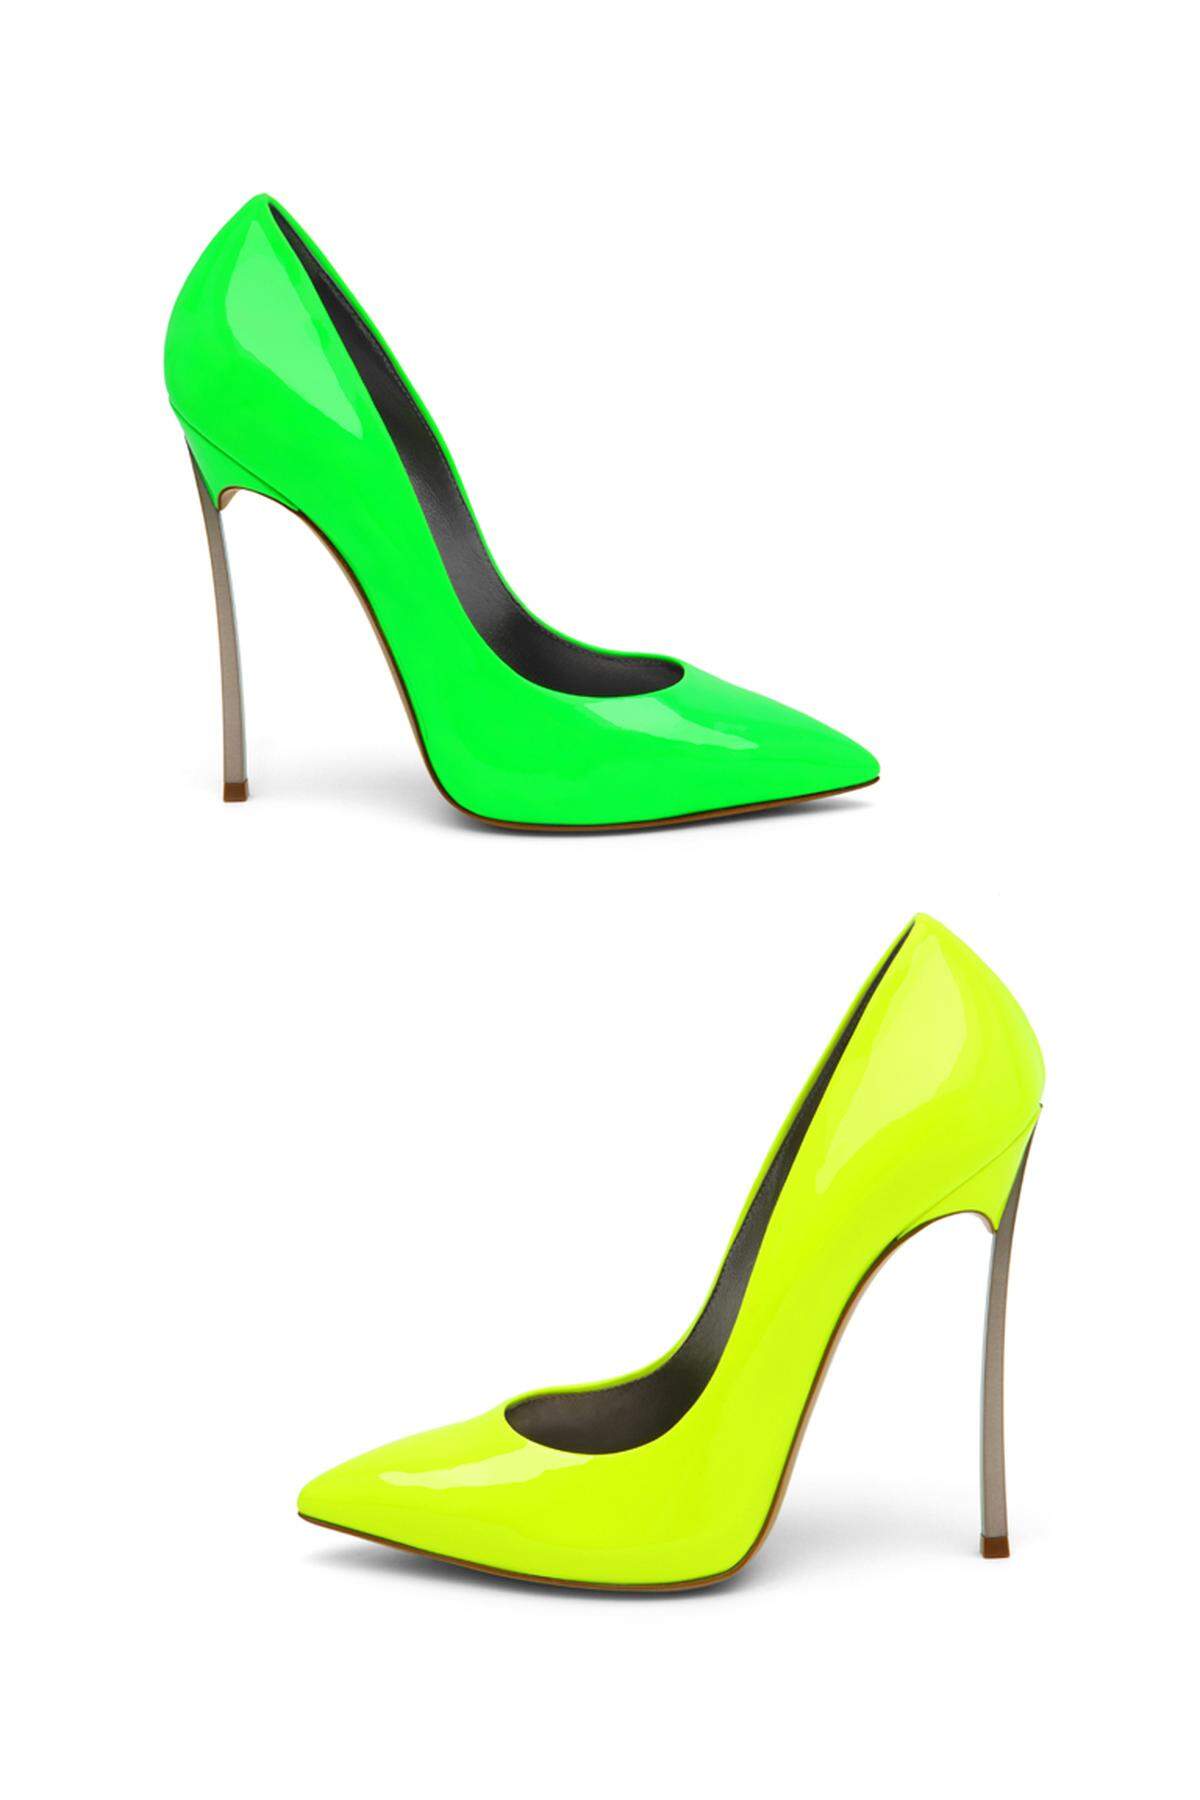 In Neonfarben leuchten die Stiletto-Heels von Casadei.